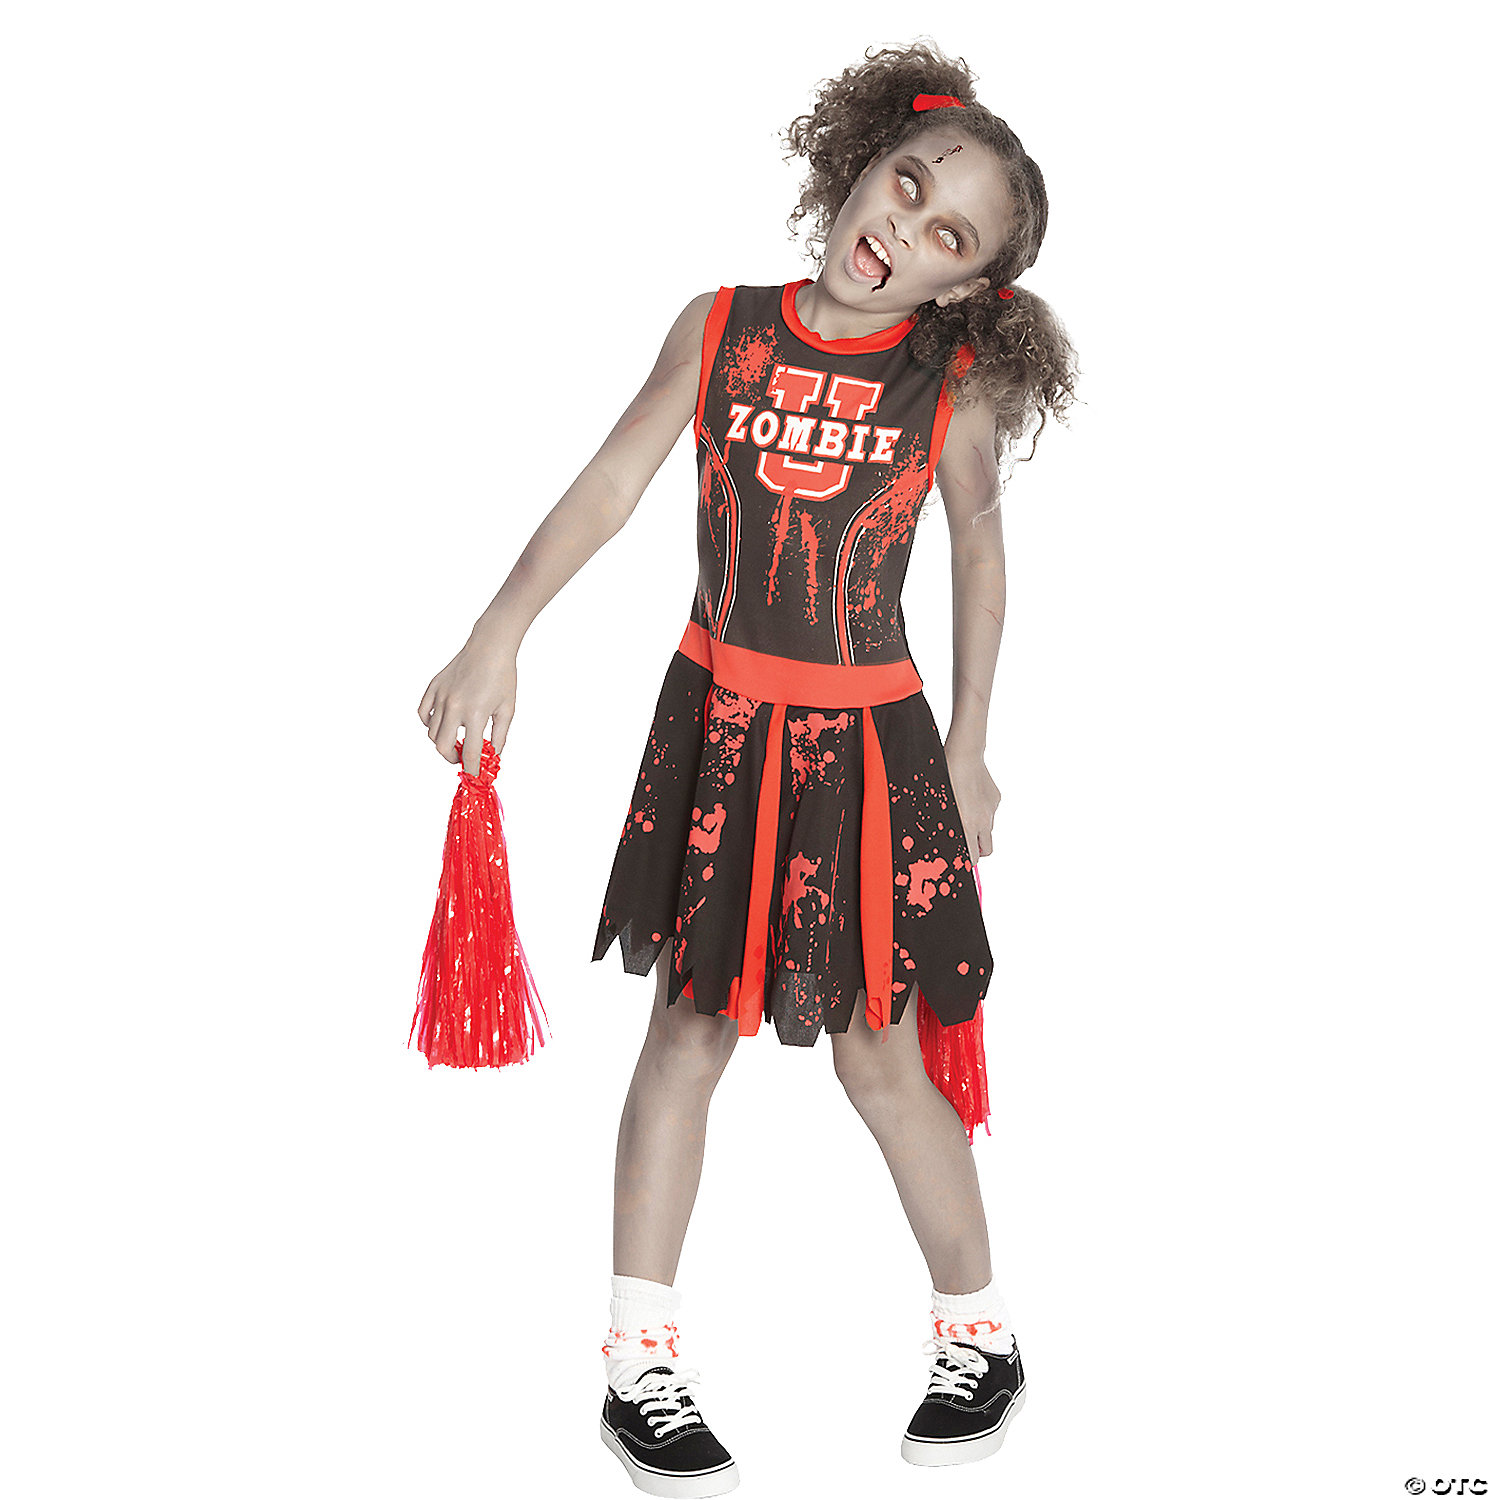 https://s7.orientaltrading.com/is/image/OrientalTrading/VIEWER_ZOOM/girls-undead-cheerleader-costume~mr143179